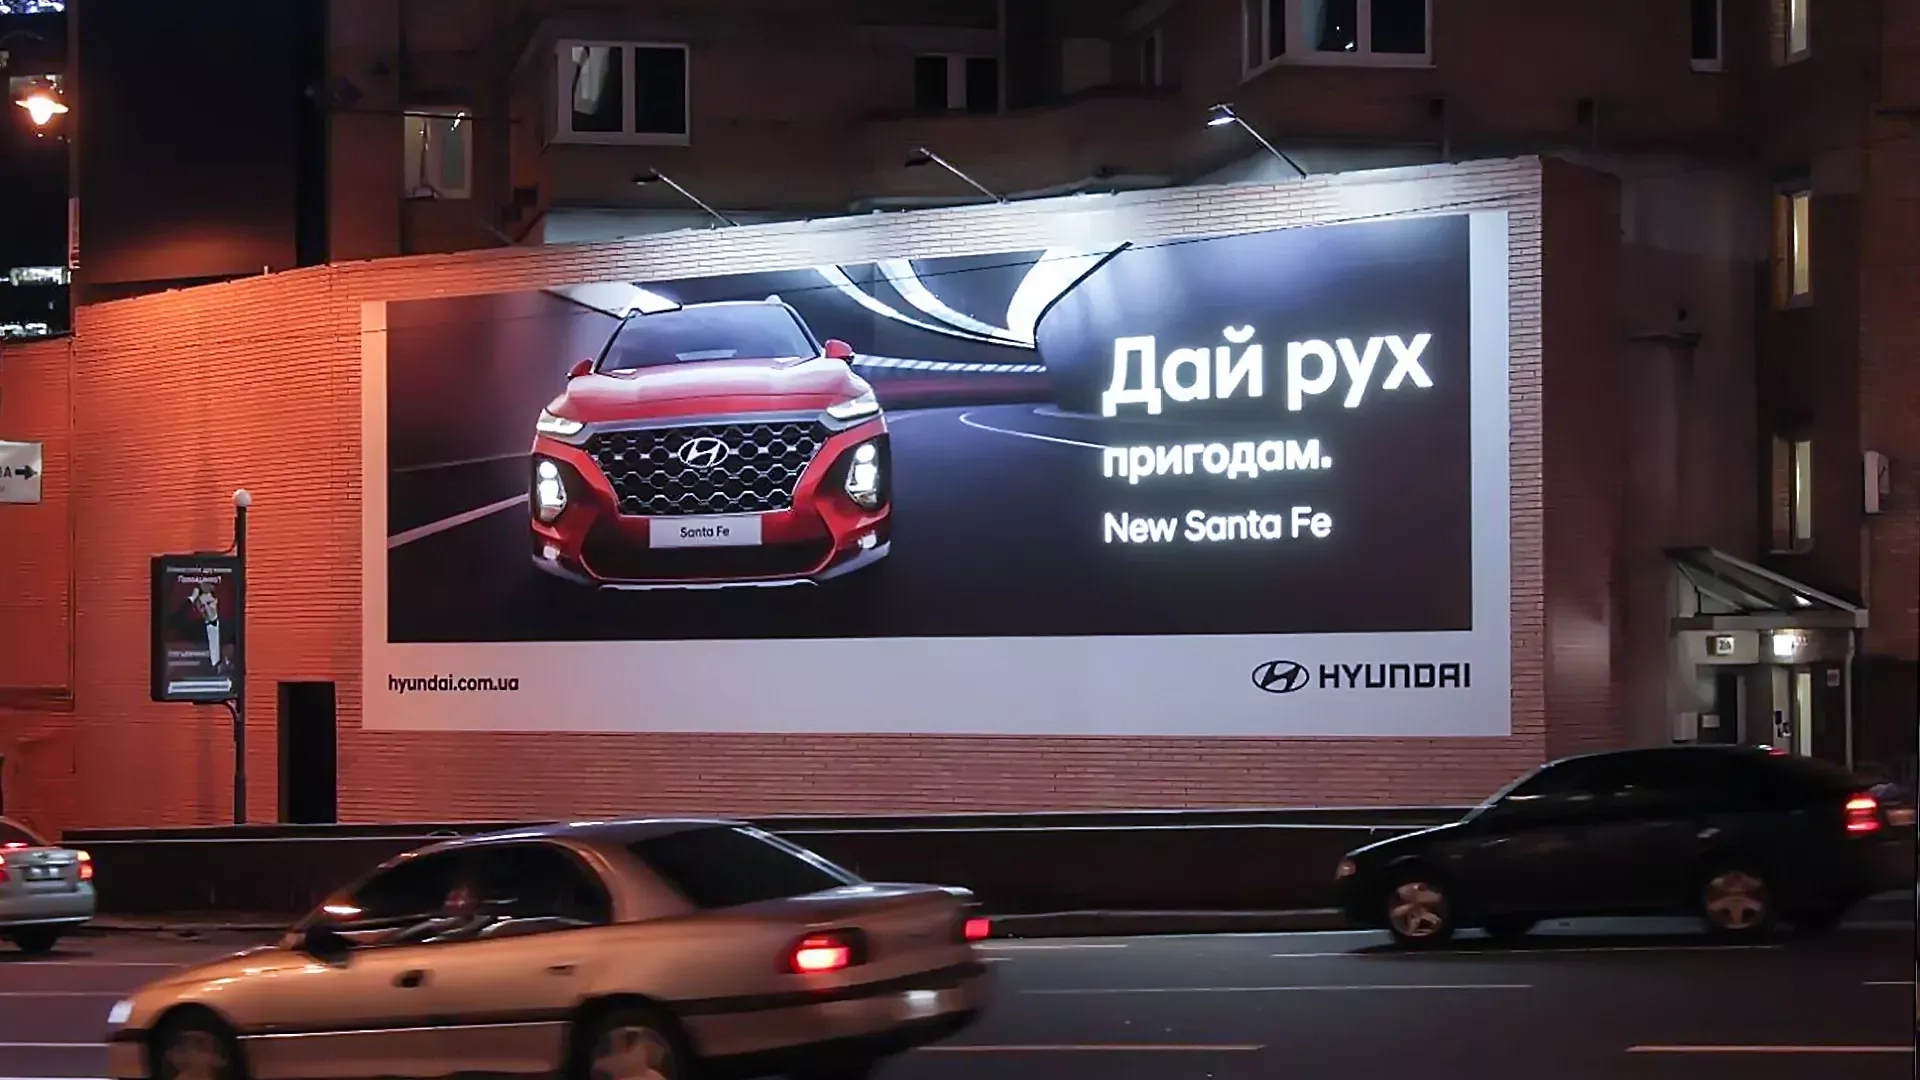 Проект по созданию и размещению нестандартного брендмауэра для Hyundai